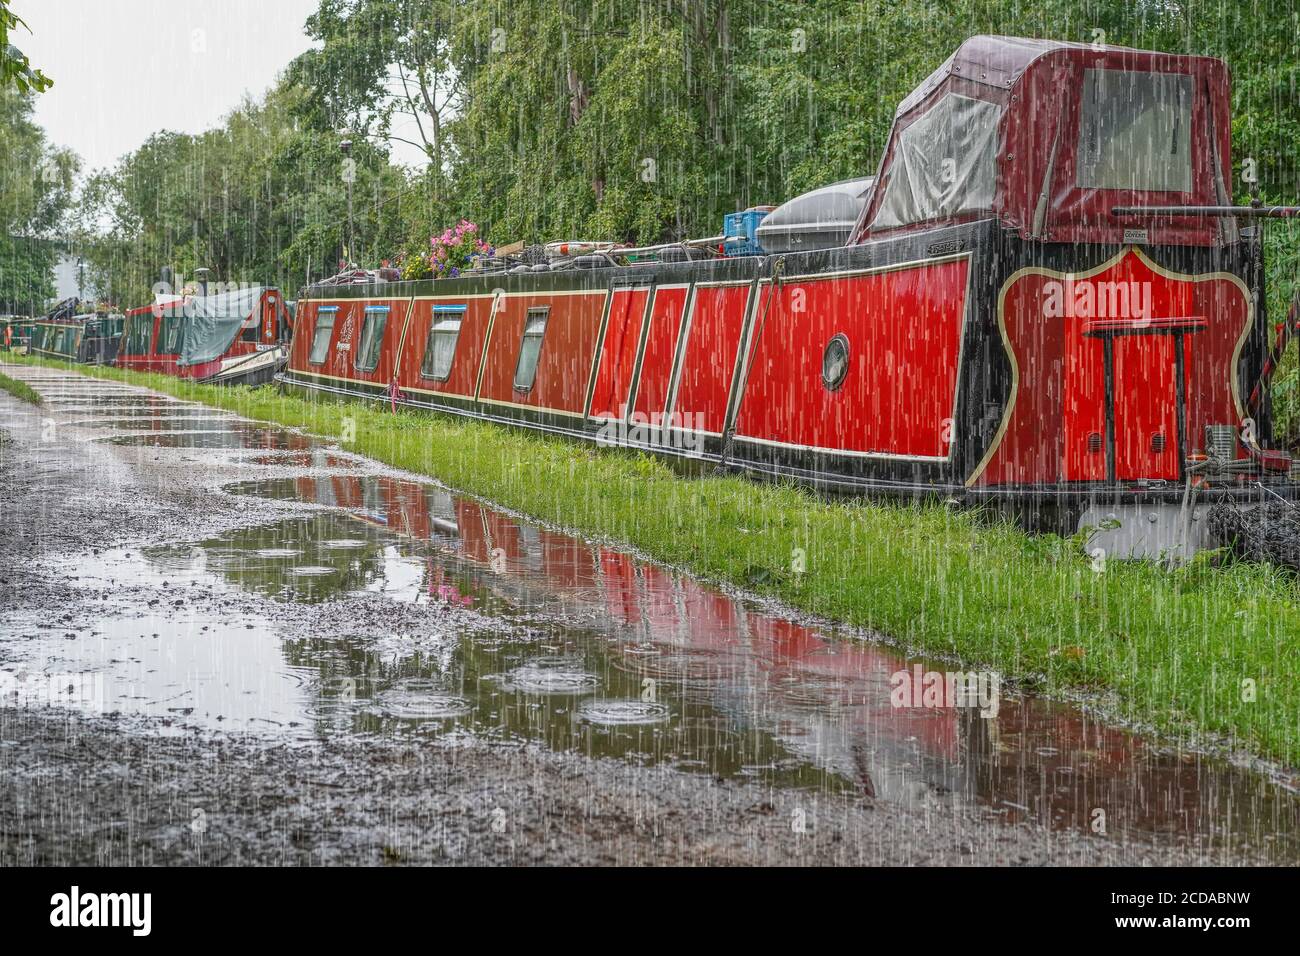 Britische Schmalboote vertäuten entlang eines Kanals Treidelpfad mit Pfützen während der schweren Sommer regen Dusche. Britischer Bootsurlaub im Regen. Stockfoto